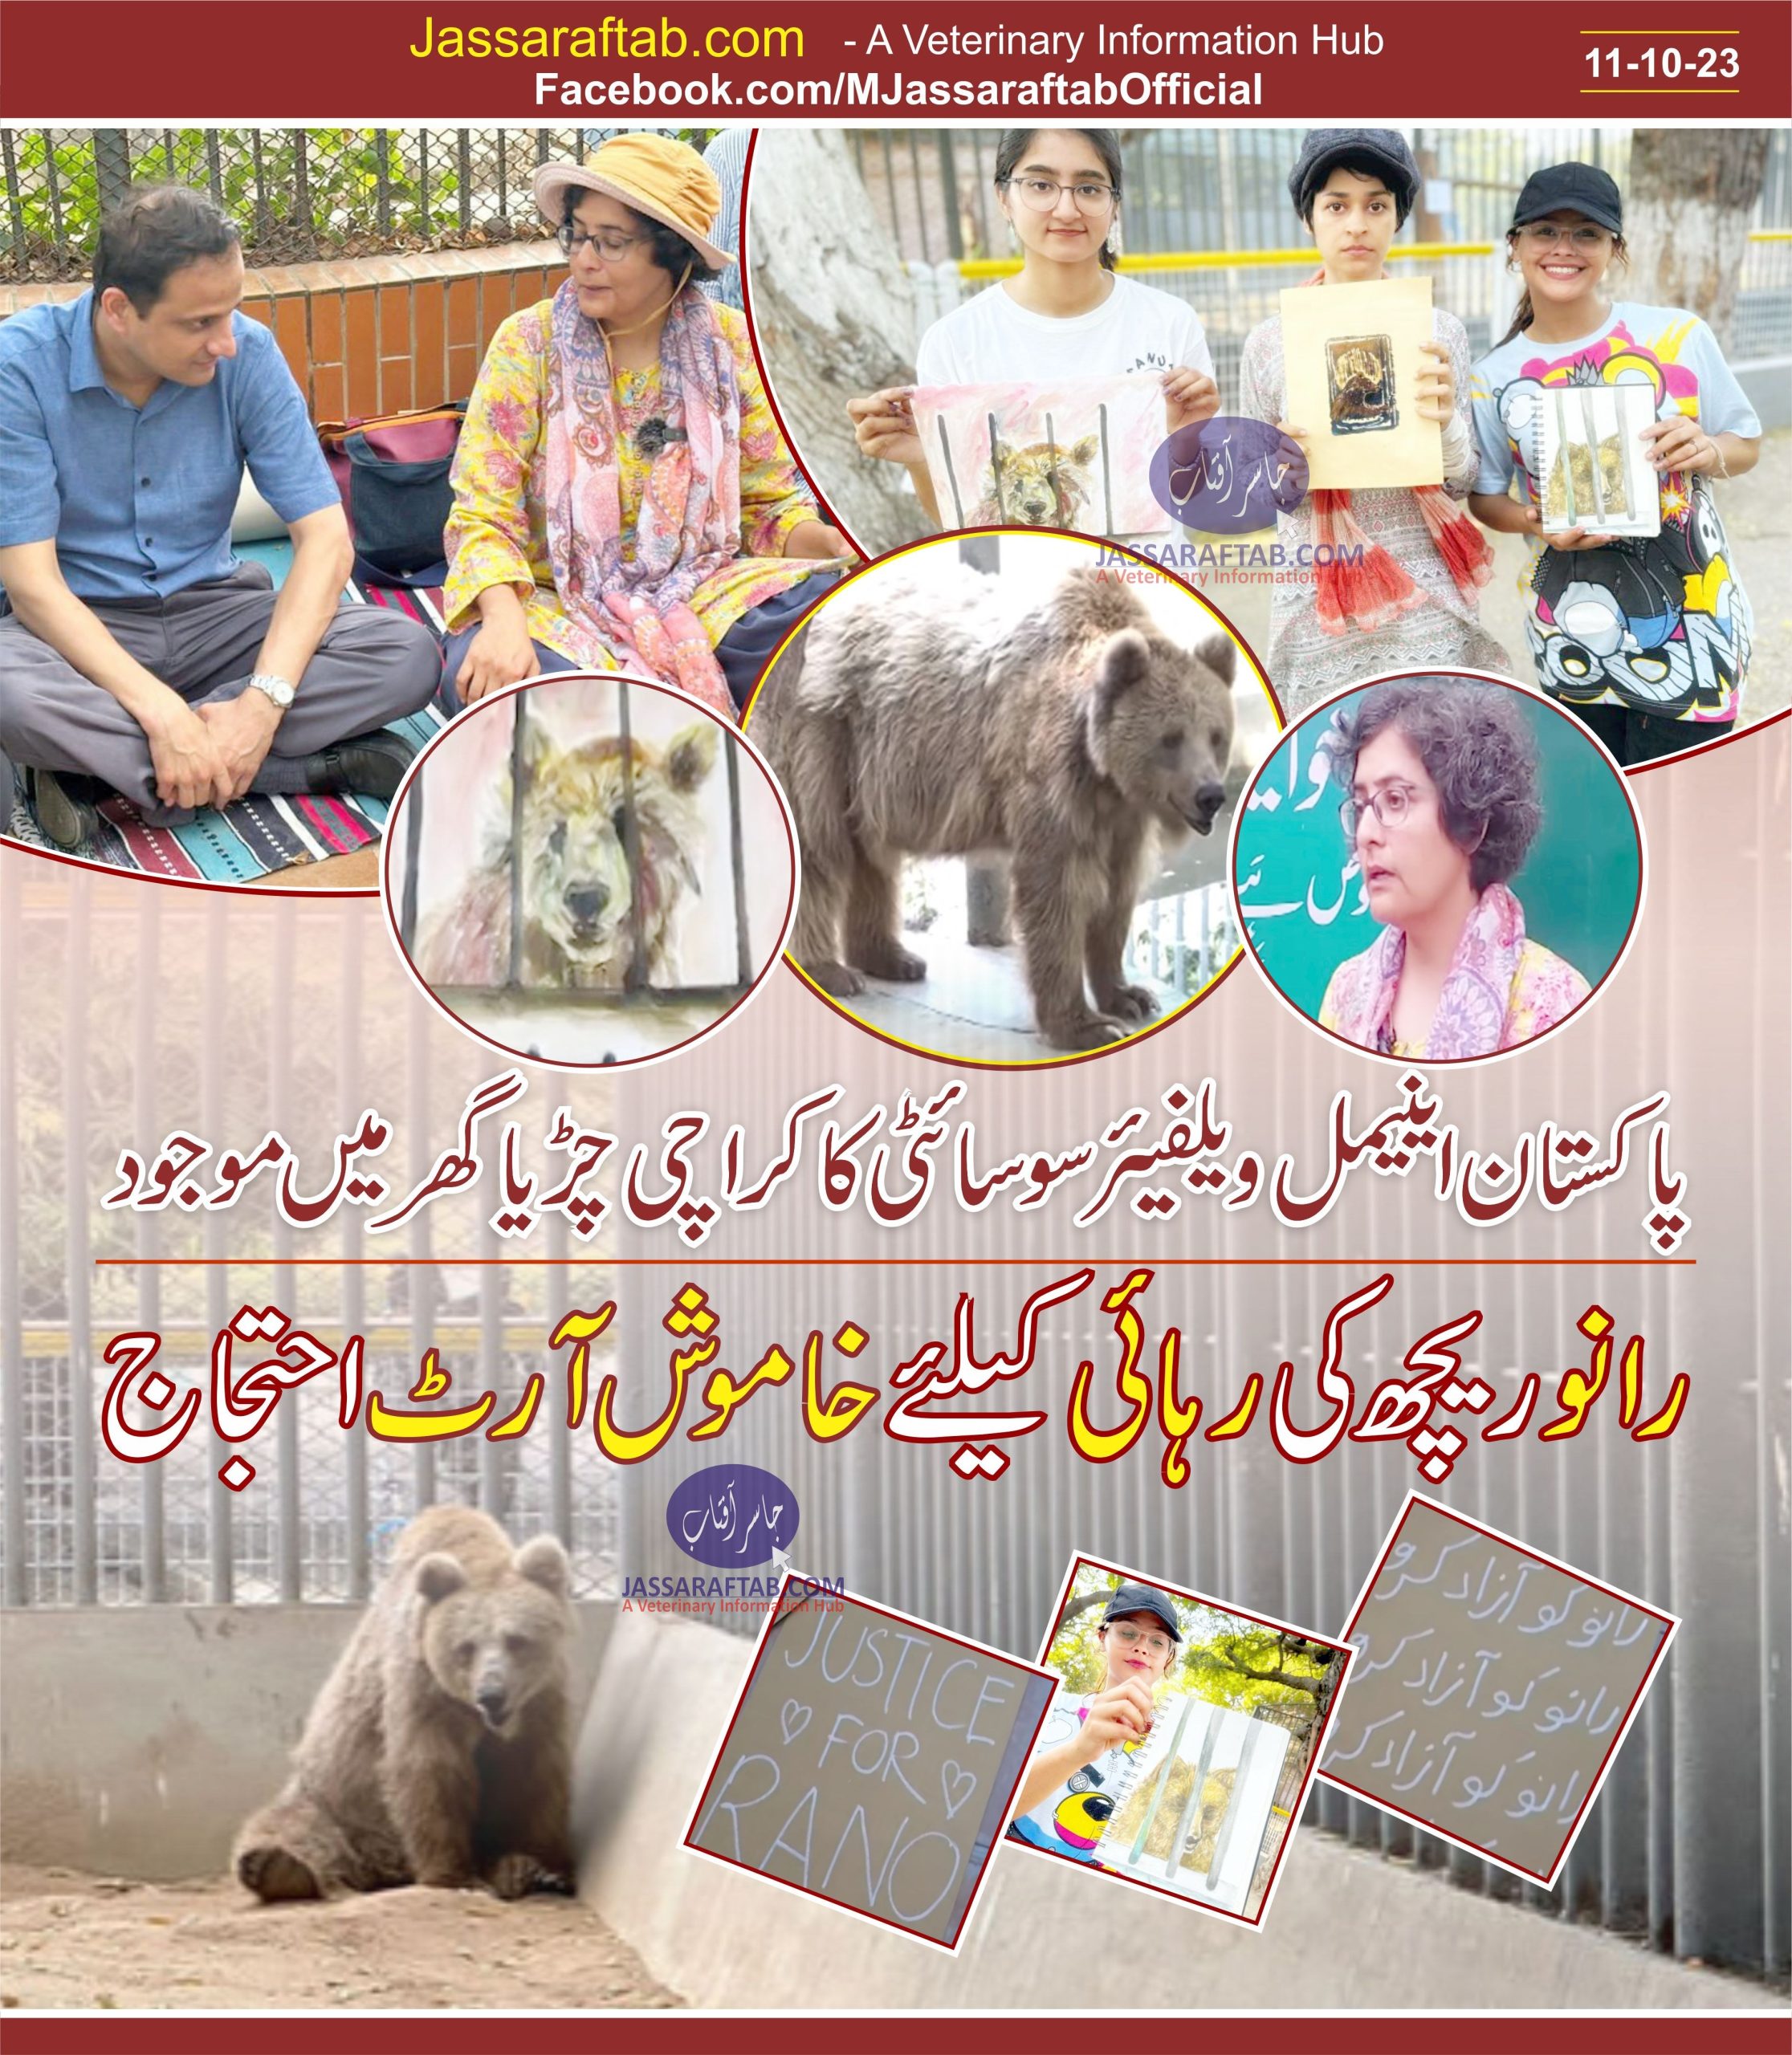 Mayor of Karachi Murtaza Wahab with Mehra Omar at Karachi zoo